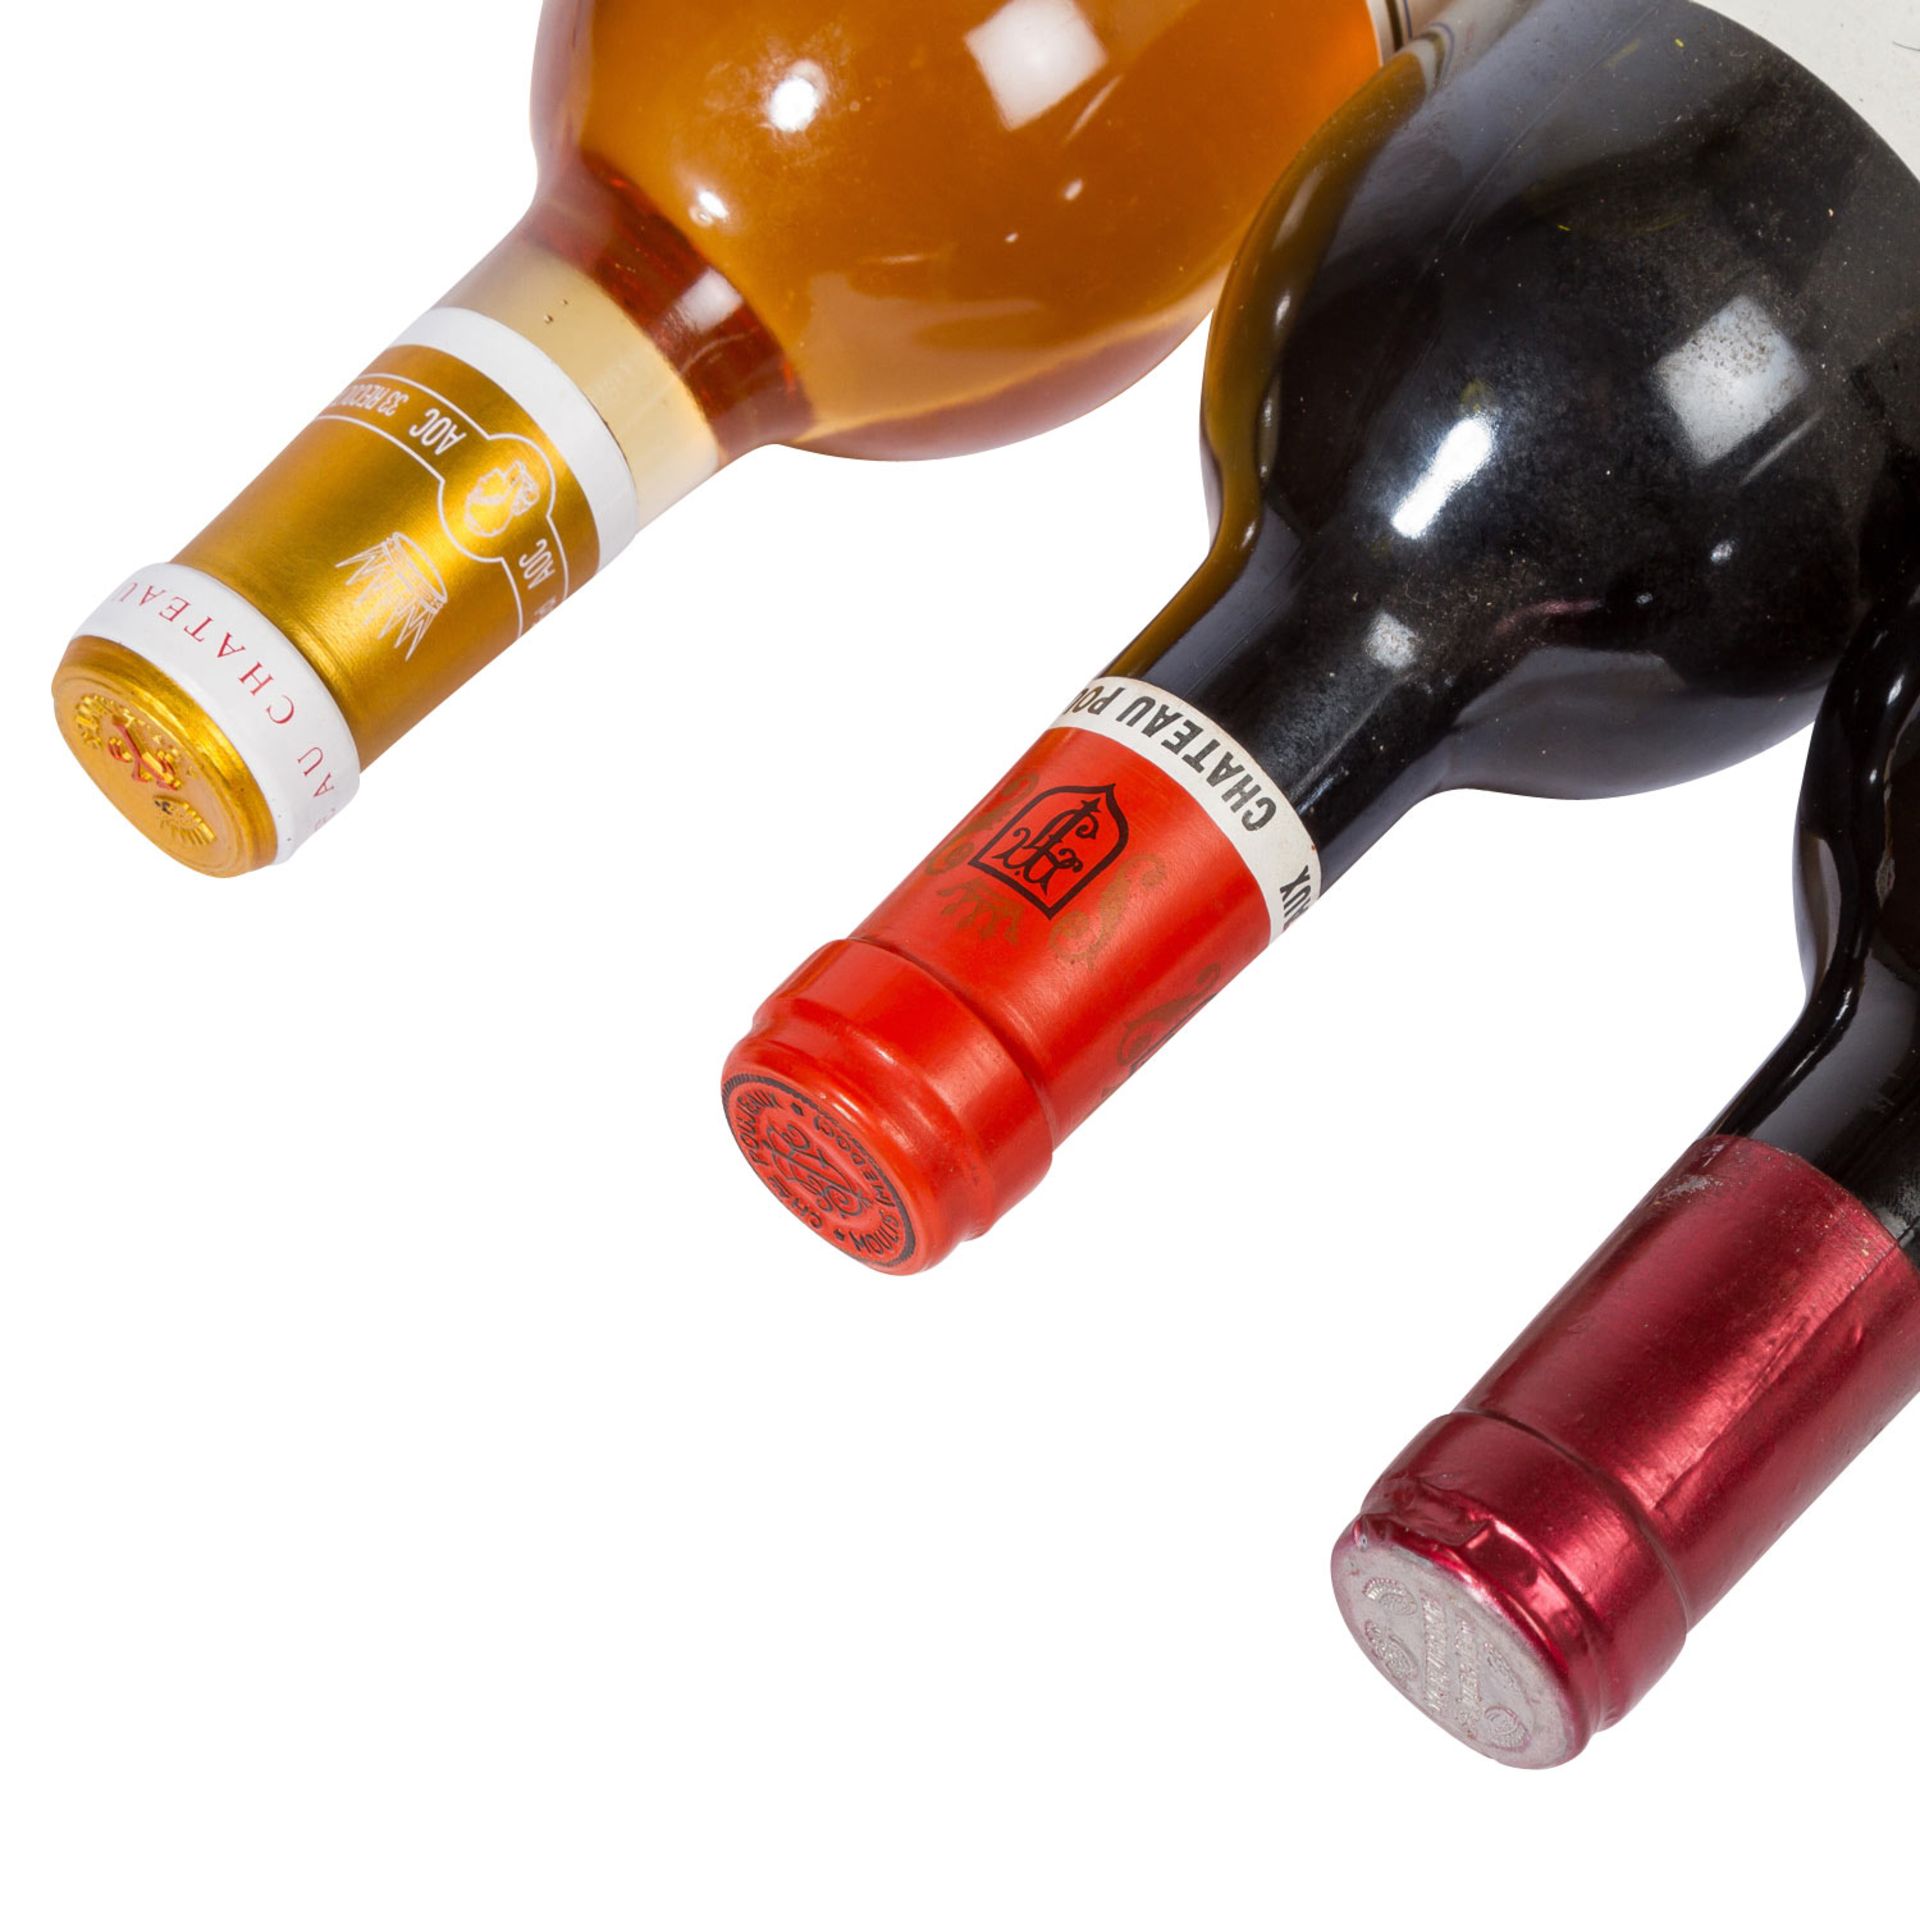 FRANKREICH gemischtes Los mit 3 Flaschen verschiedener Jahrgänge und Rebsorten - Image 3 of 3